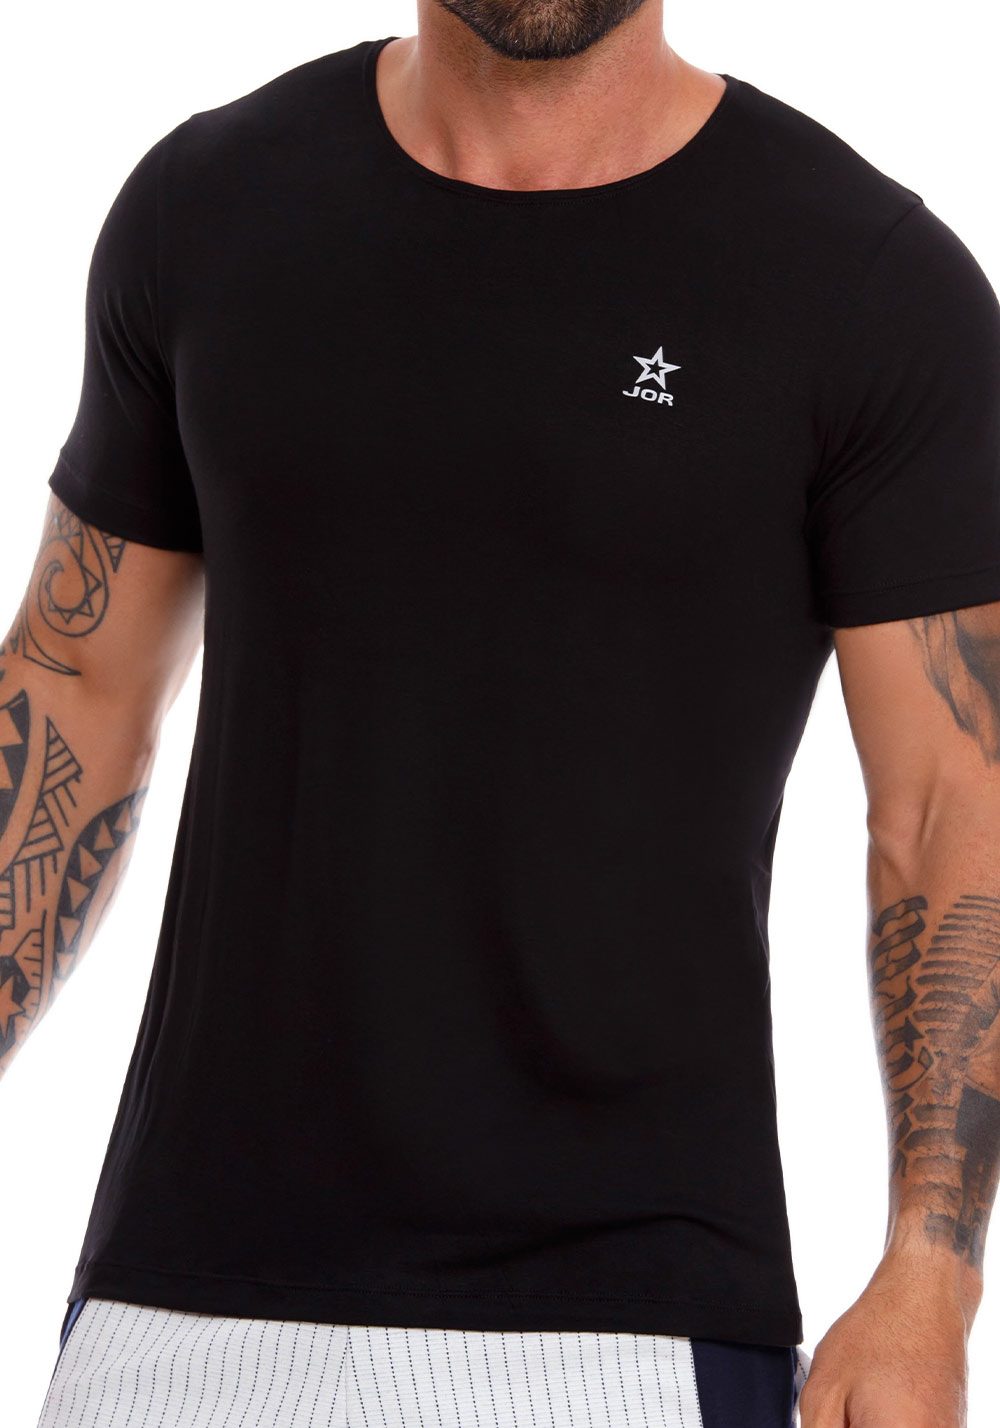 JOR T-Shirt Cross | Black